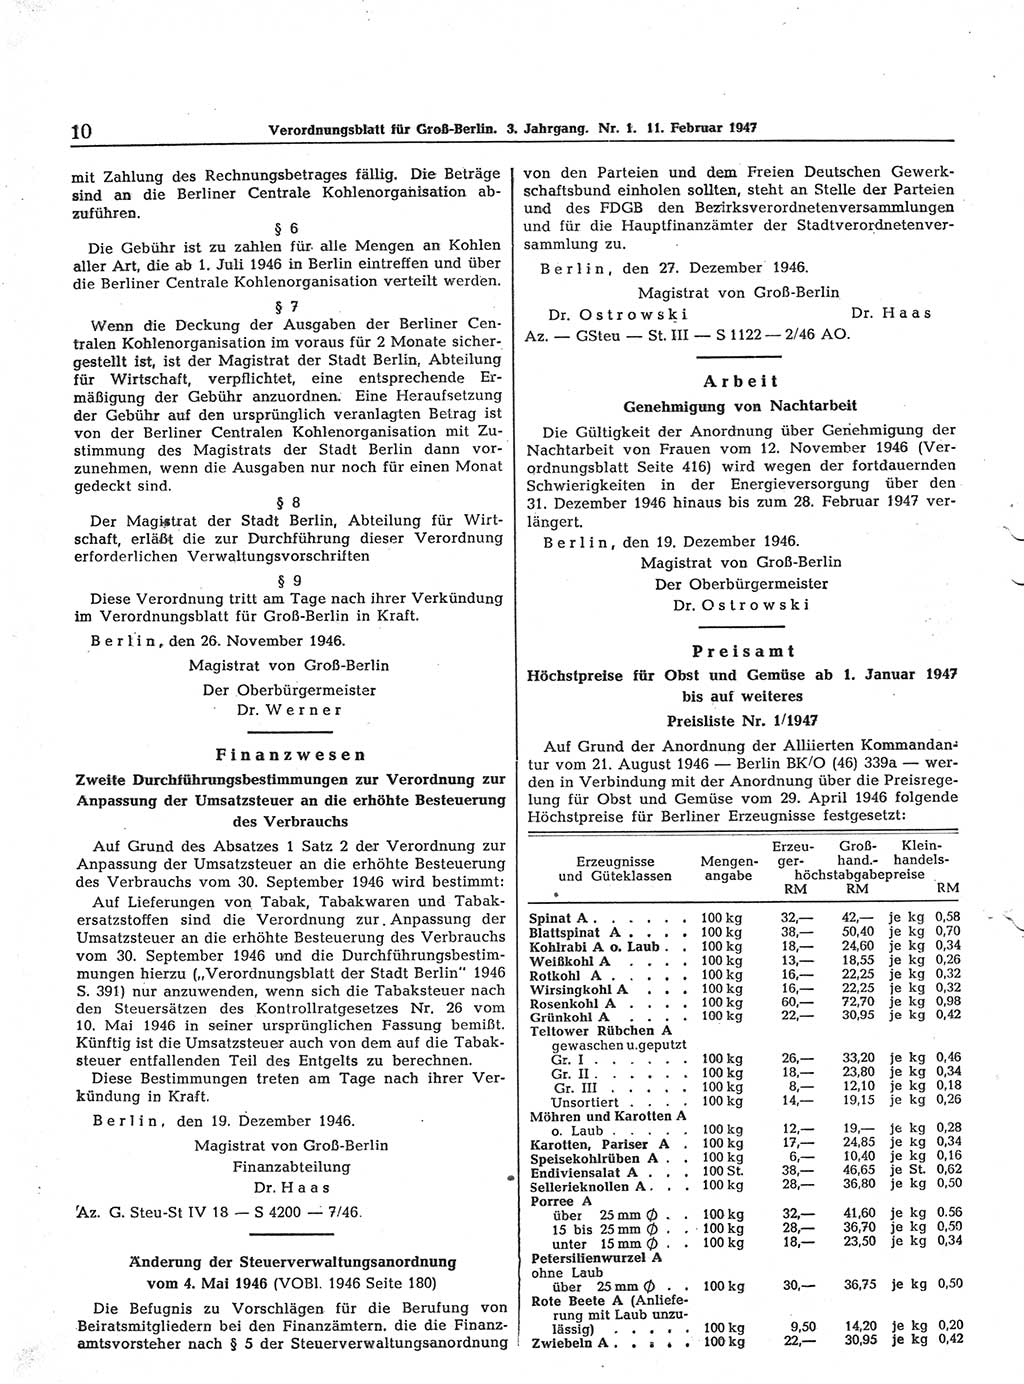 Verordnungsblatt (VOBl.) für Groß-Berlin 1947, Seite 10 (VOBl. Bln. 1947, S. 10)